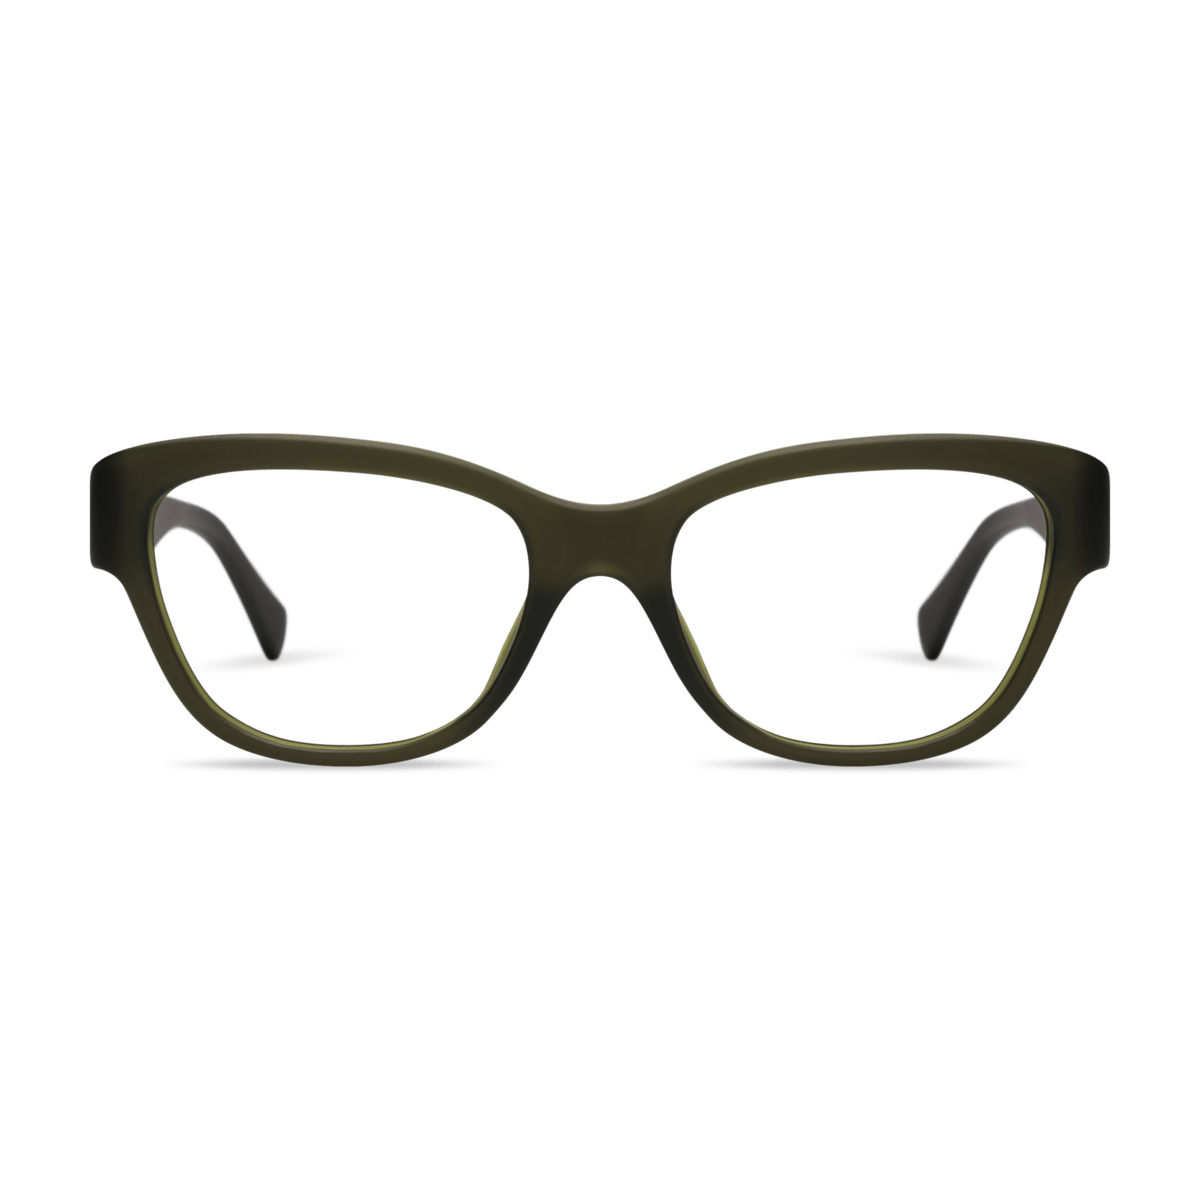 Milla Readers Eyeglasses LOOK OPTIC (Forest Green) +1.00 